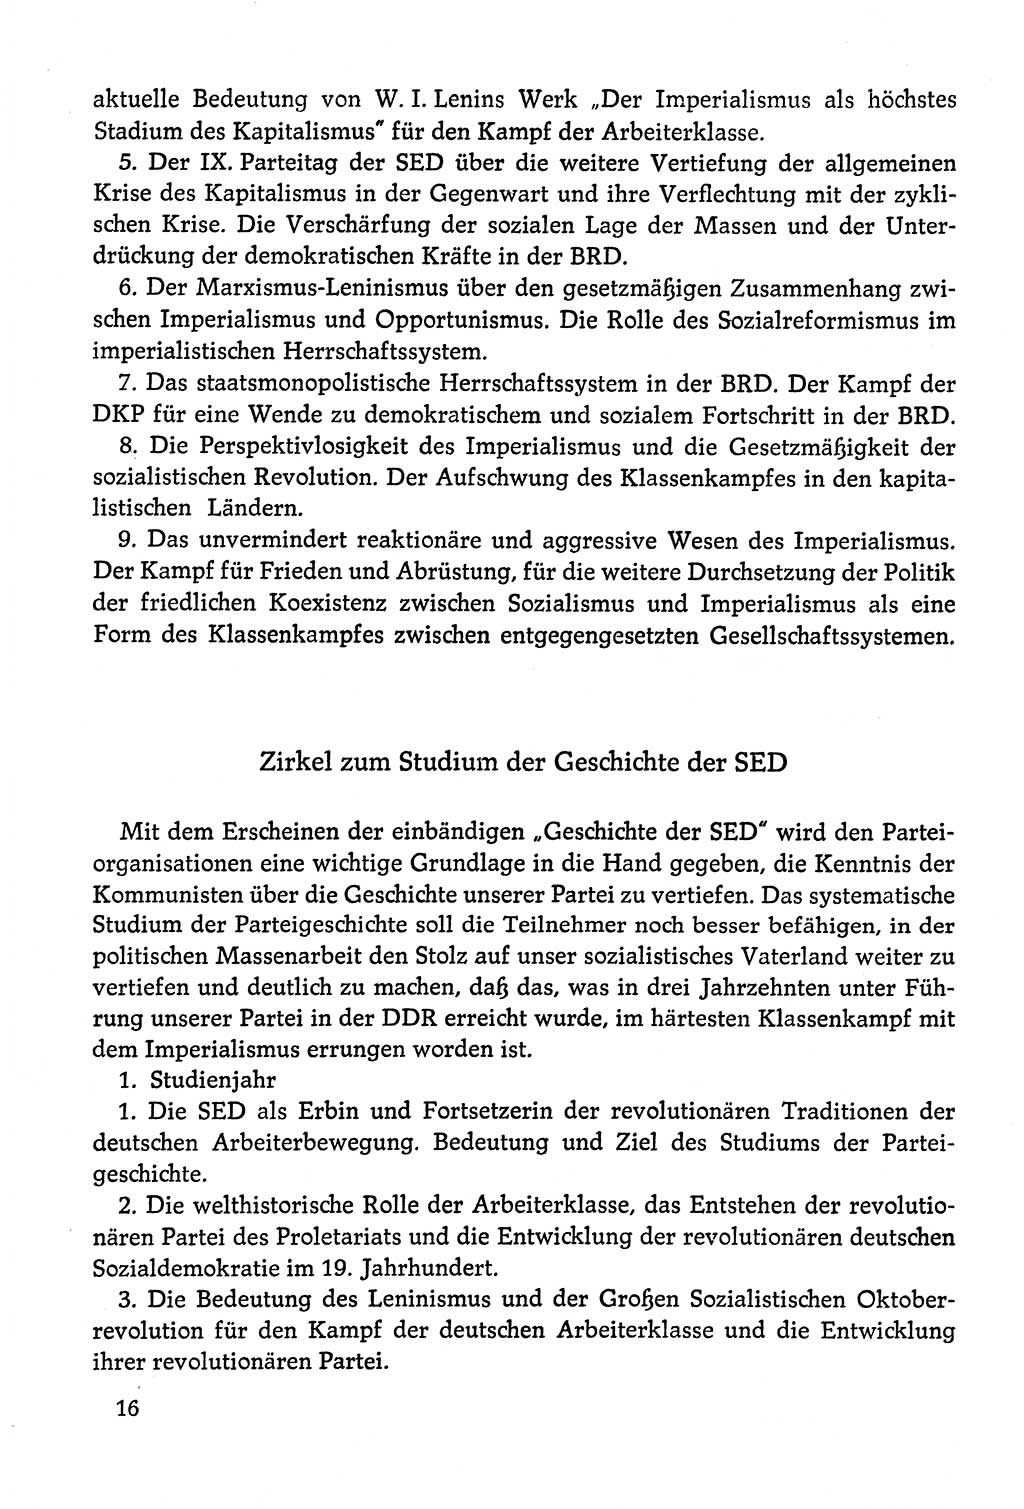 Dokumente der Sozialistischen Einheitspartei Deutschlands (SED) [Deutsche Demokratische Republik (DDR)] 1978-1979, Seite 16 (Dok. SED DDR 1978-1979, S. 16)